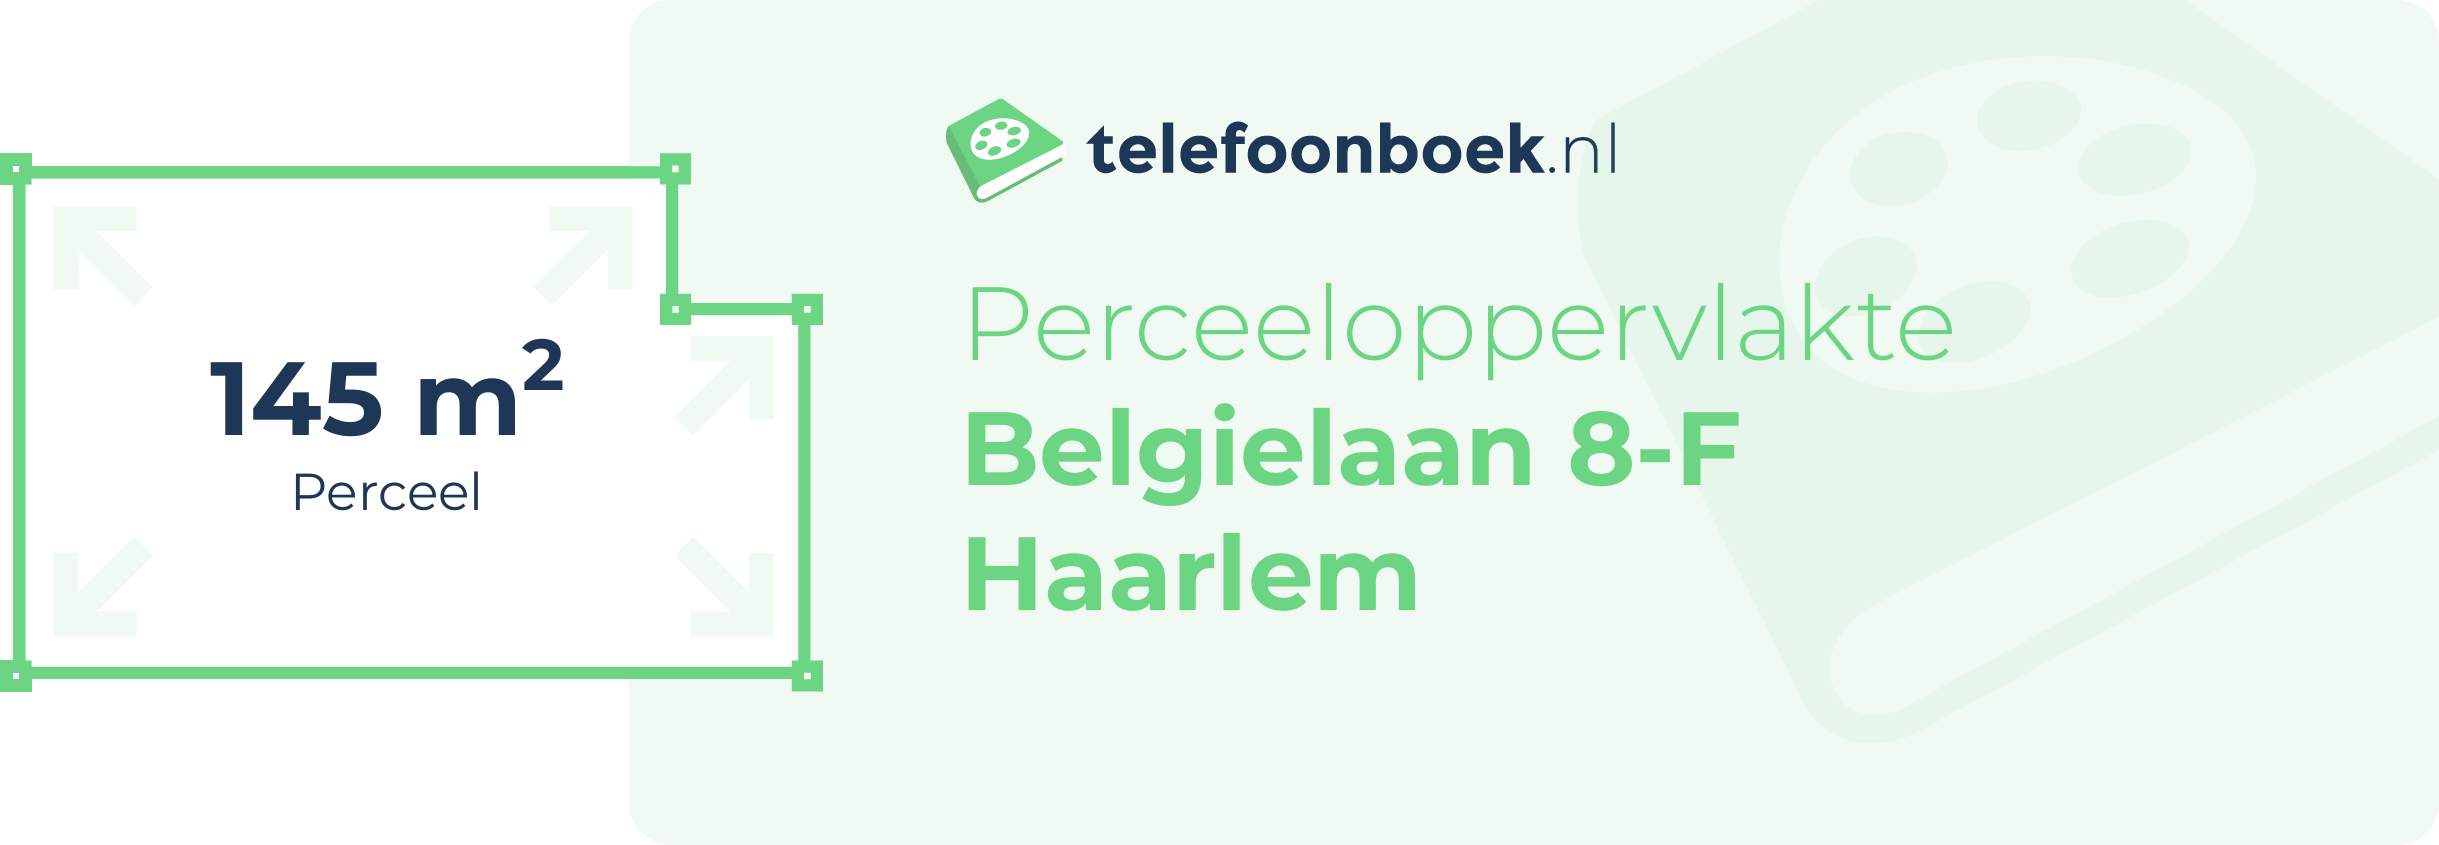 Perceeloppervlakte Belgielaan 8-F Haarlem